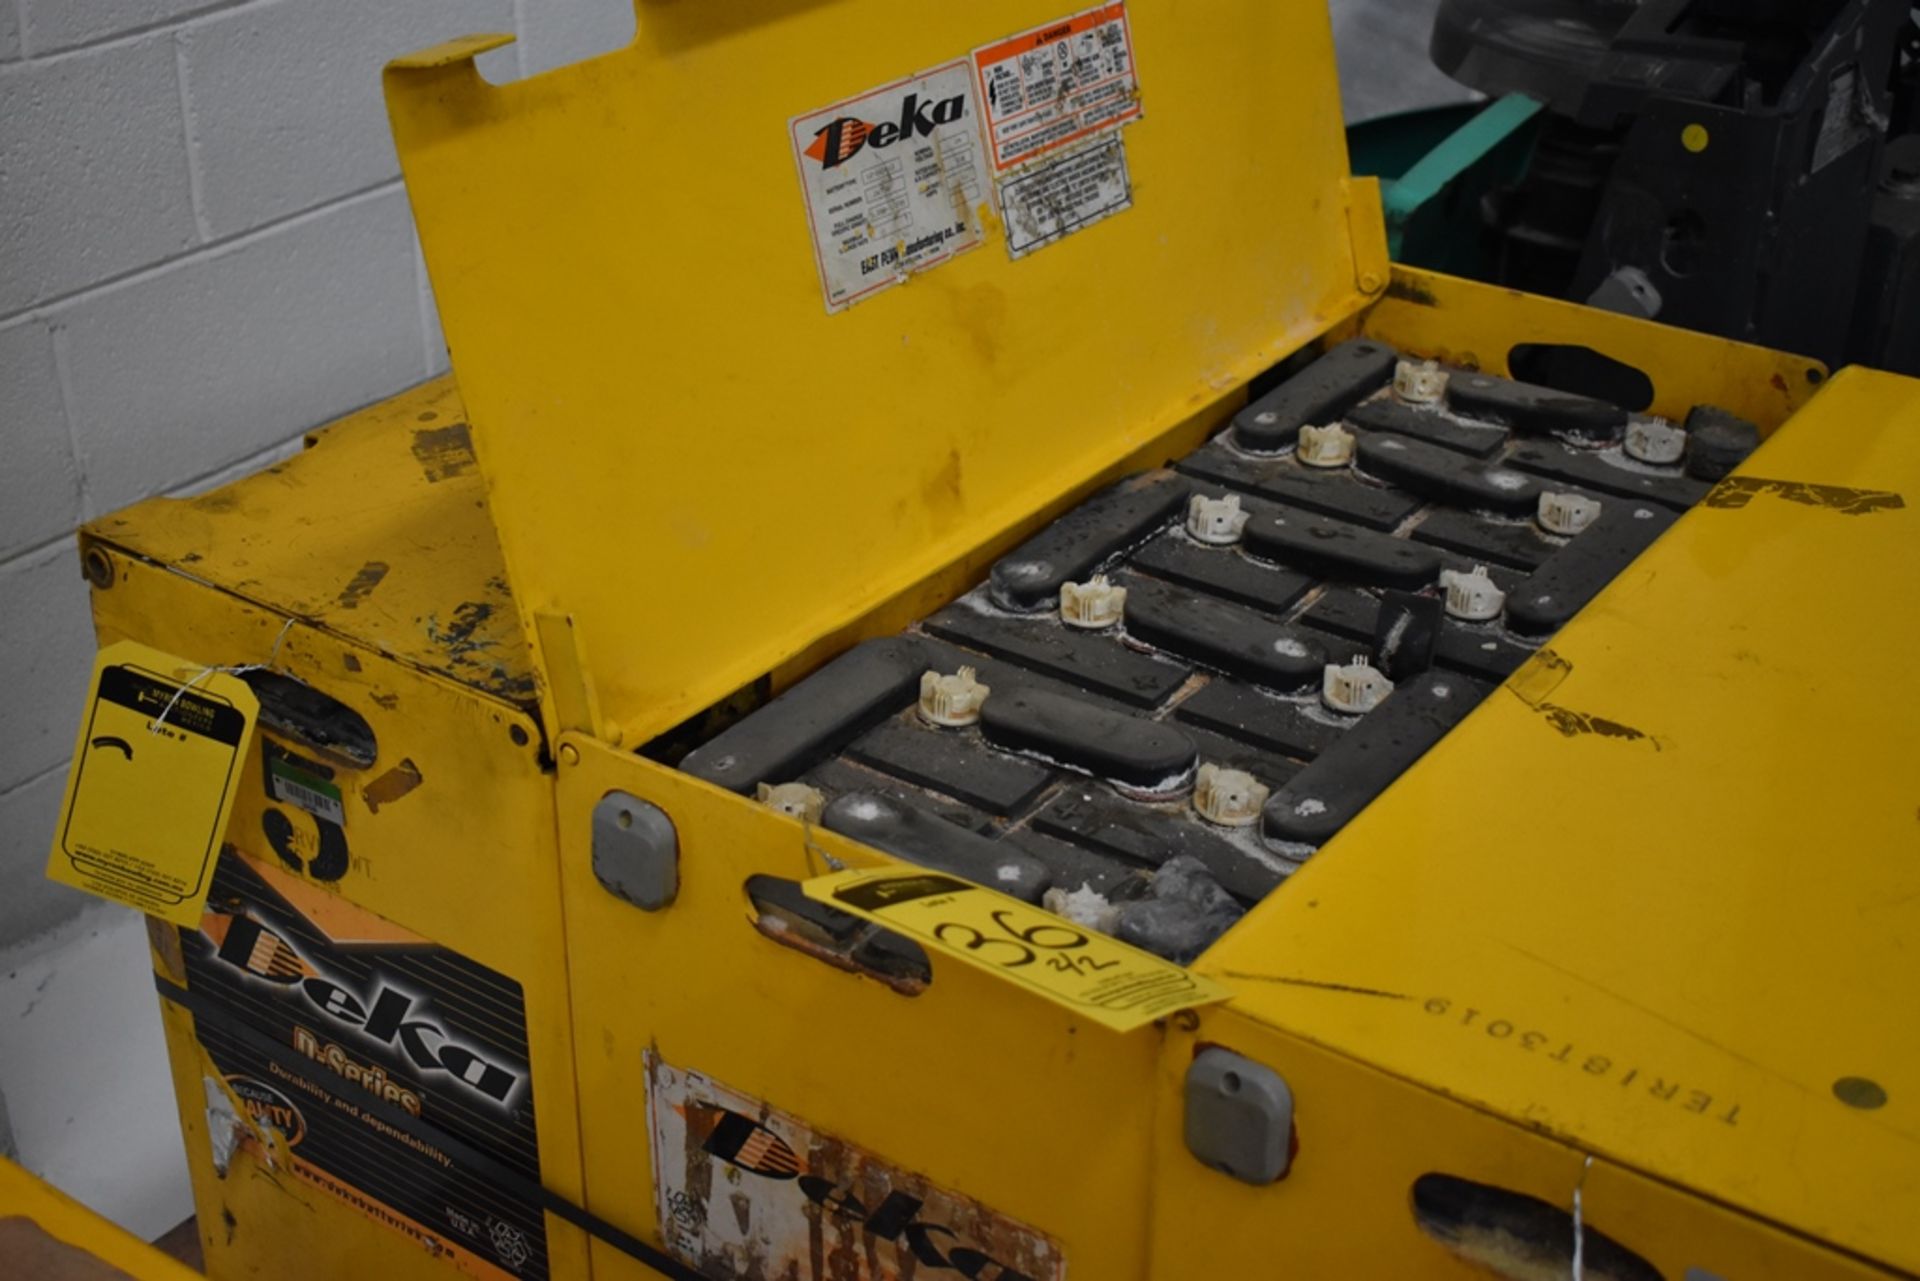 Ametek Prestolite Power Forklift Battery Charger, Model Mate-80 and Battery Brand Deka for 24 volts - Image 15 of 16